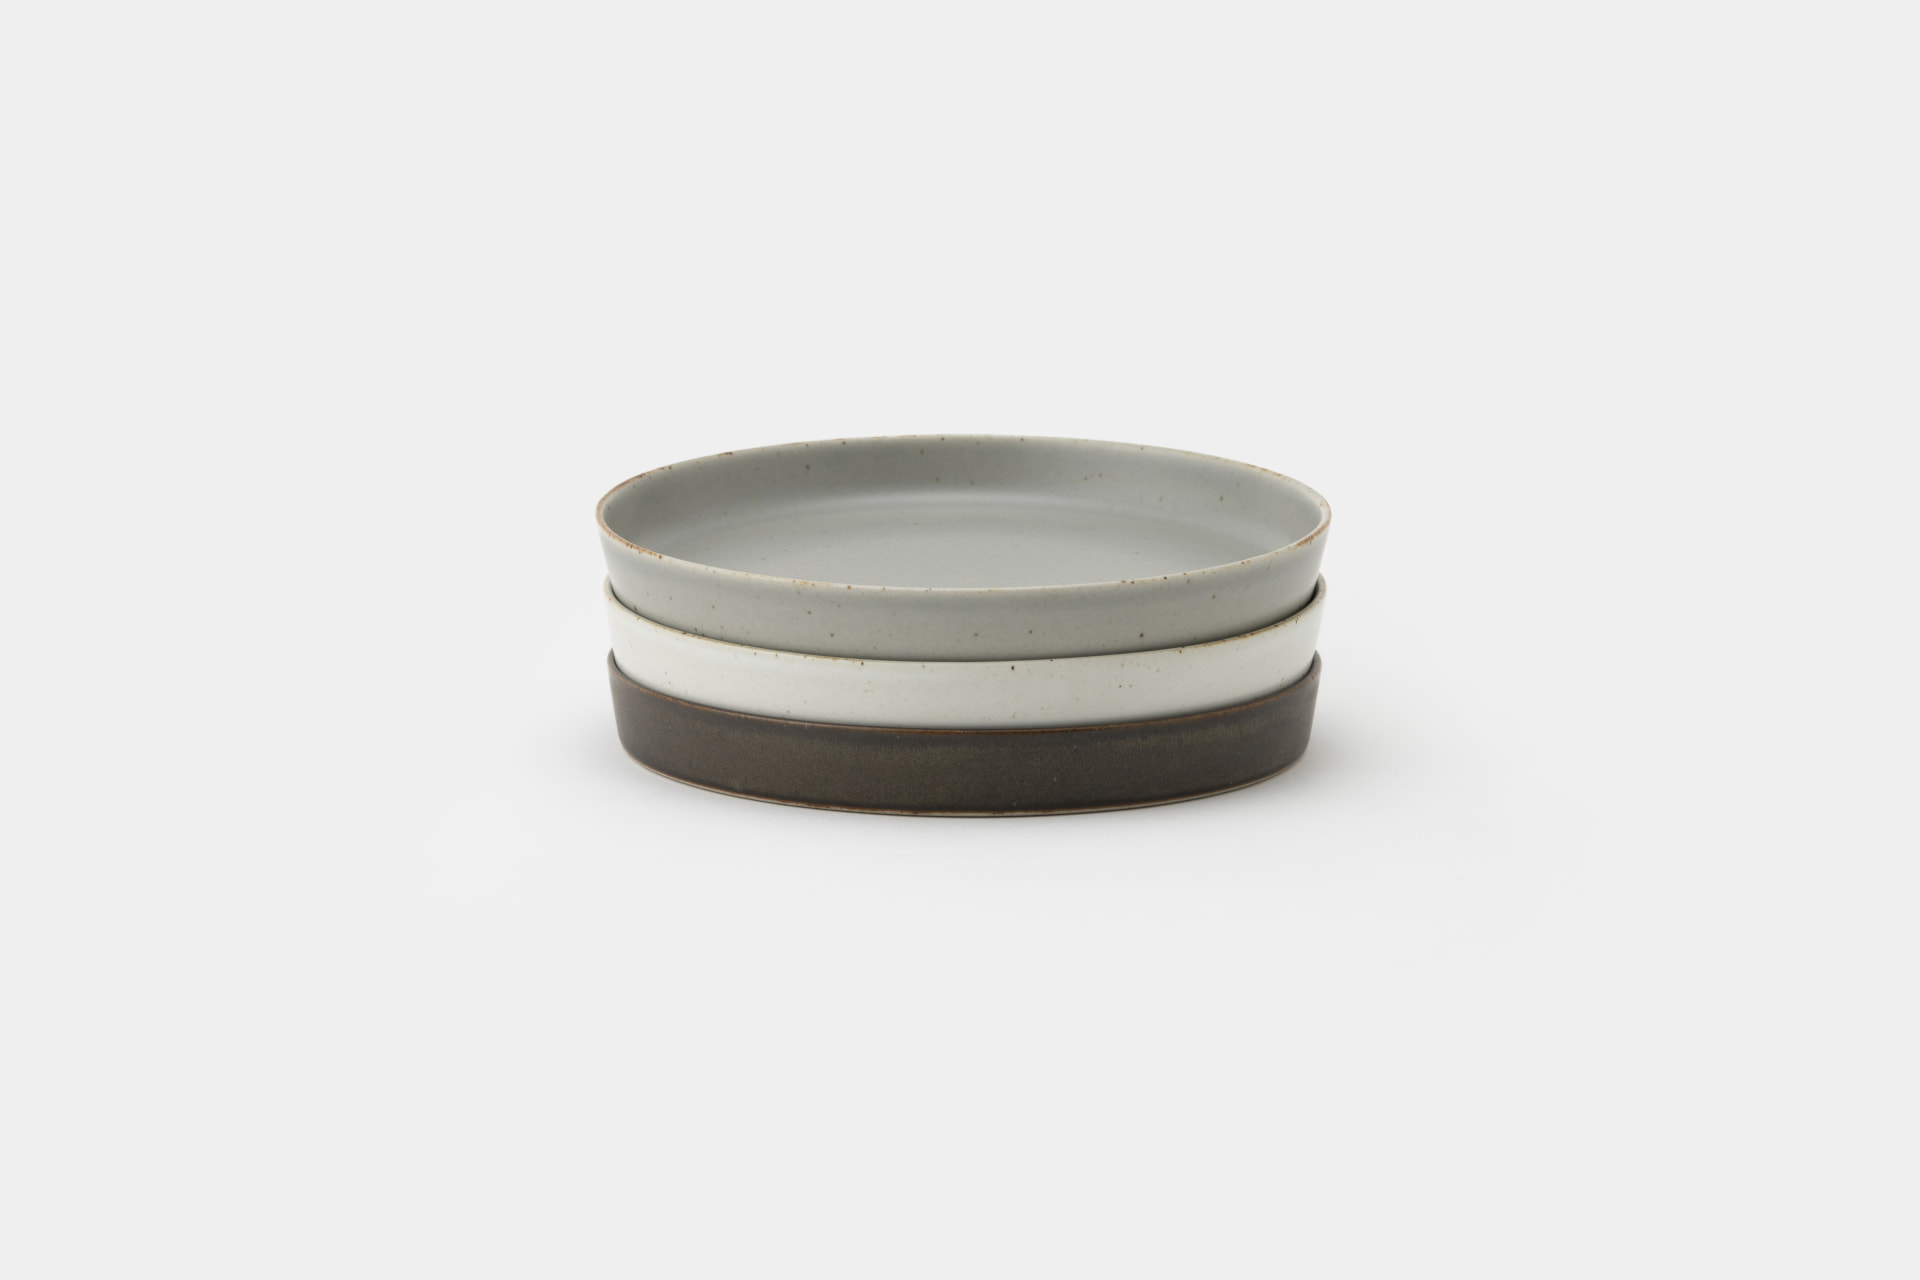 吉田 愛が監修した 陶磁器ブランド「zen to」の「plate 160」 | Web 